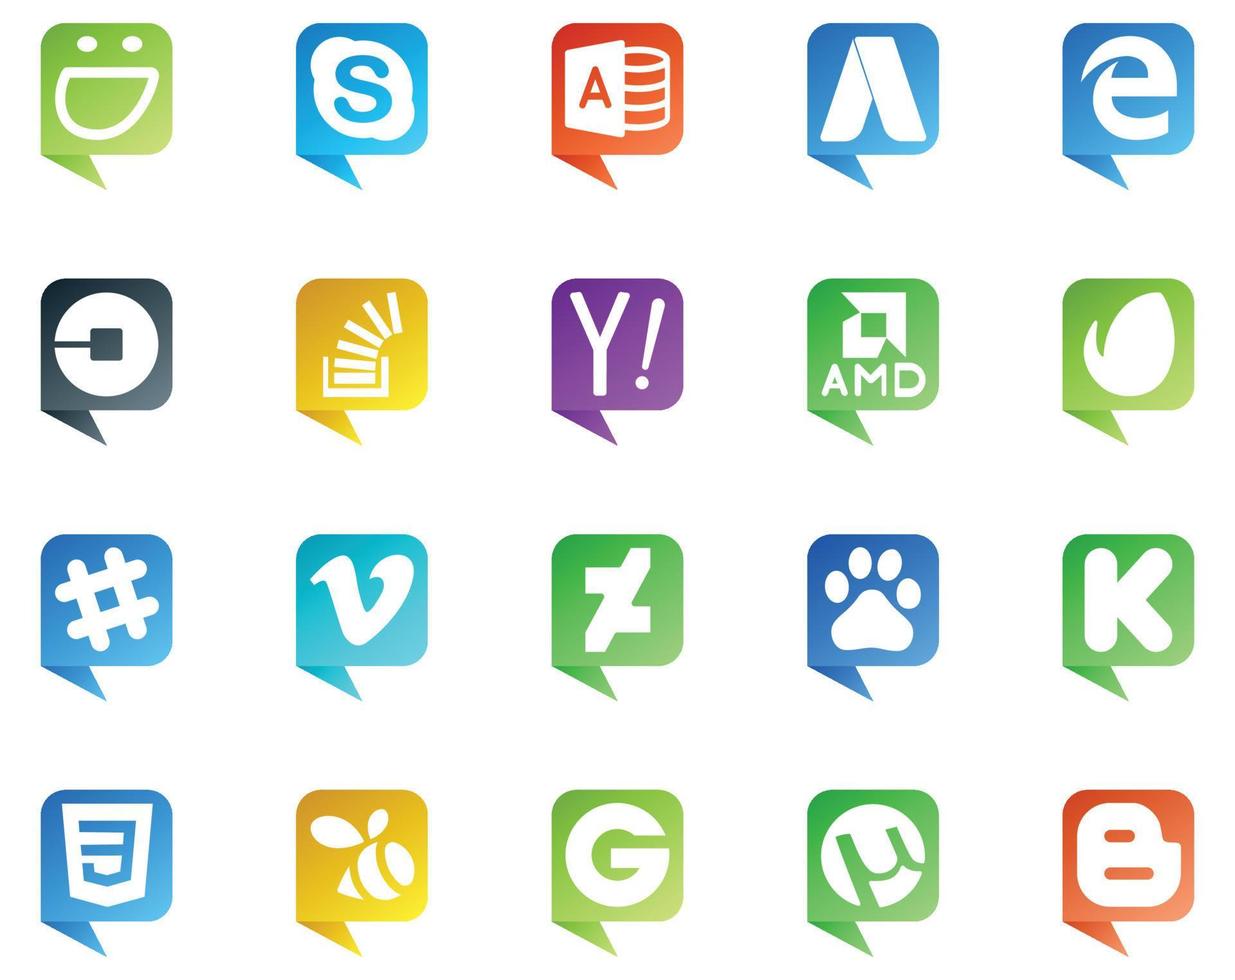 20 logo de style bulle de discours de médias sociaux comme débordement de recherche de pilote amd mou vecteur